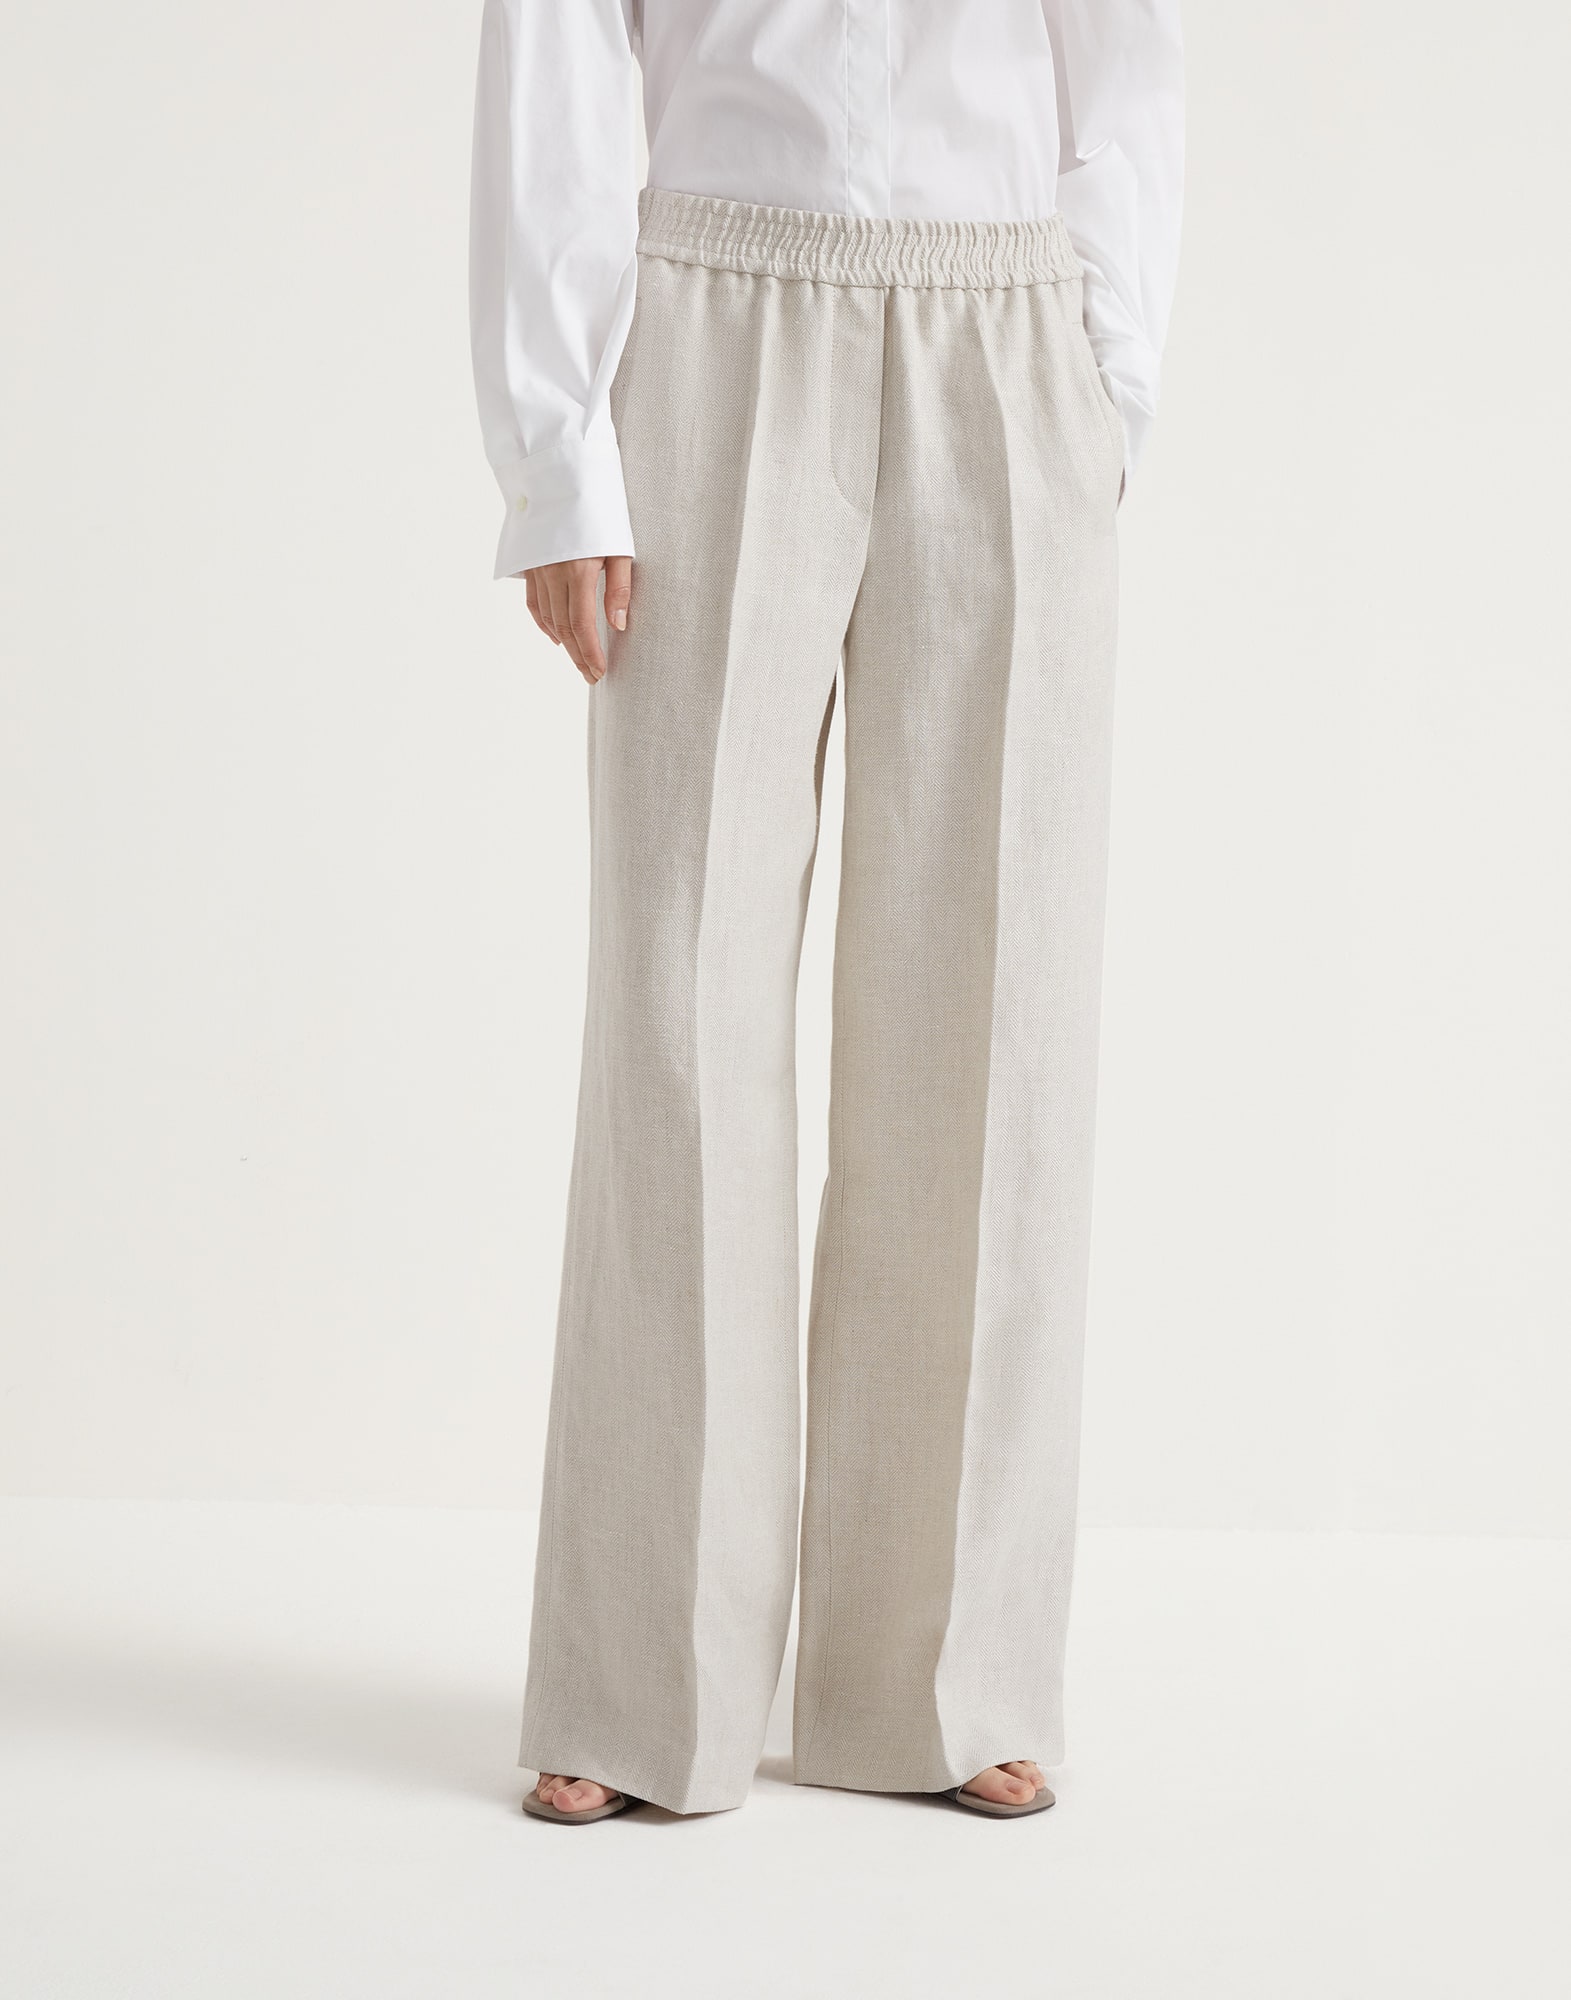 Pyjama-style trousers Panama Woman -
                        Brunello Cucinelli
                    